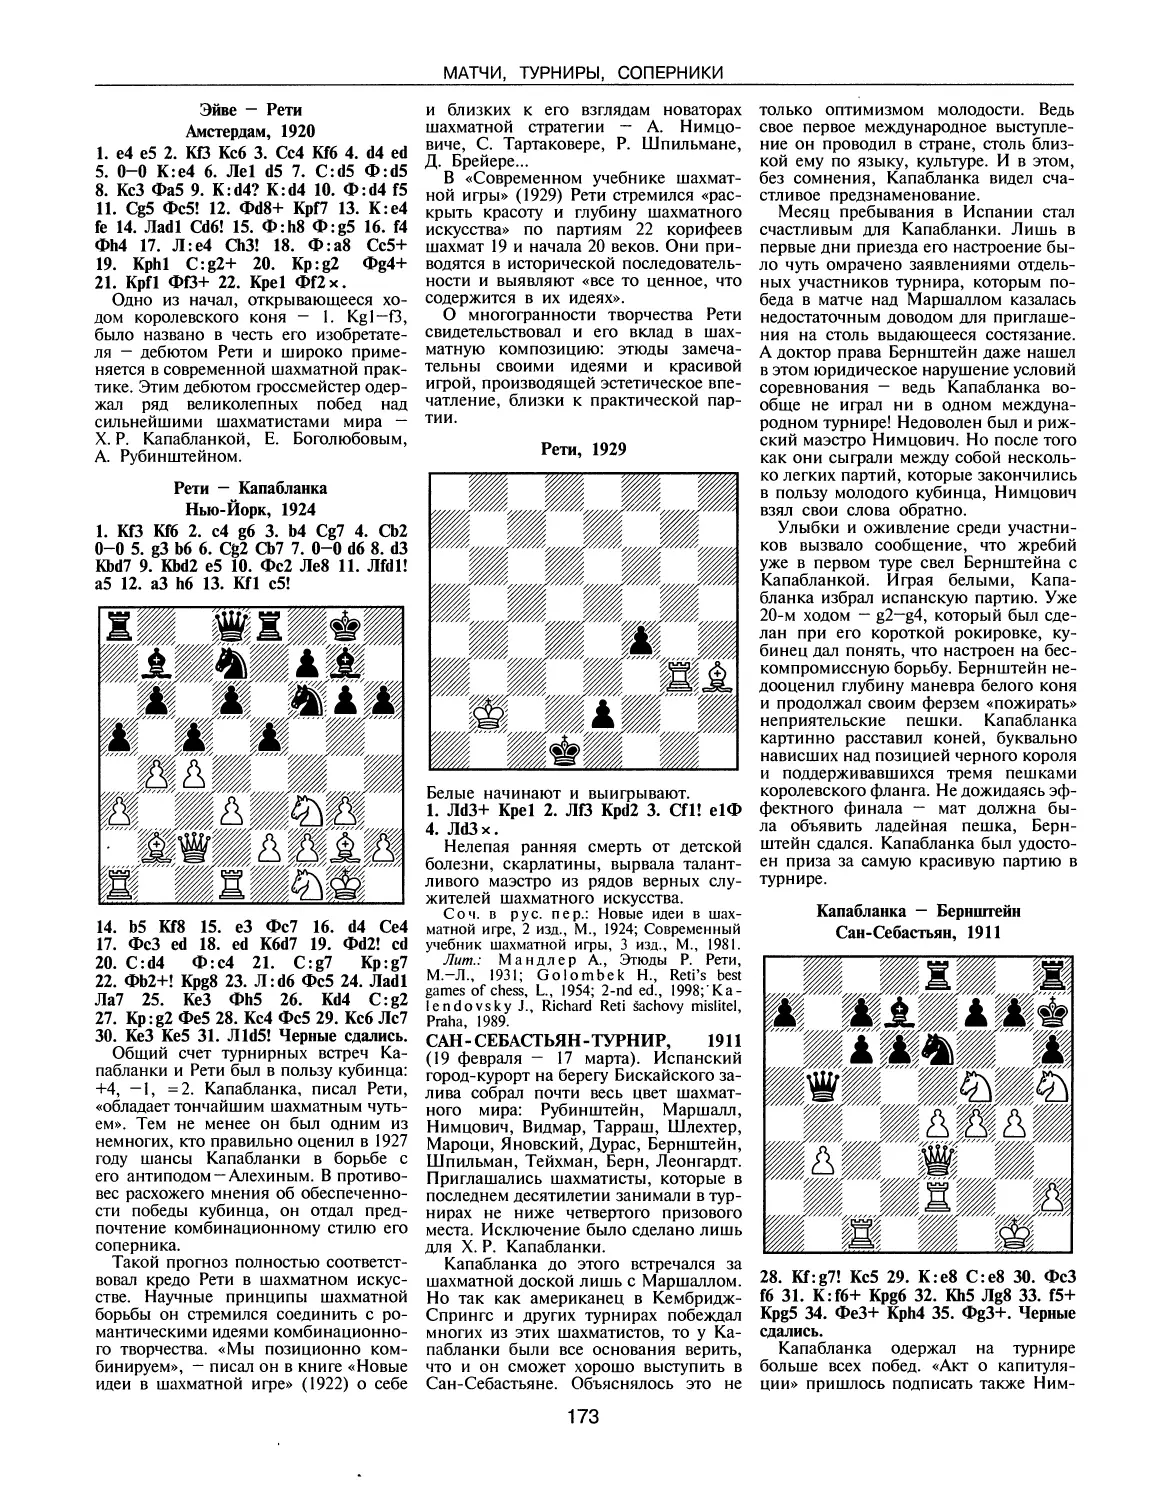 Сан-Себастьян-турнир, 1911